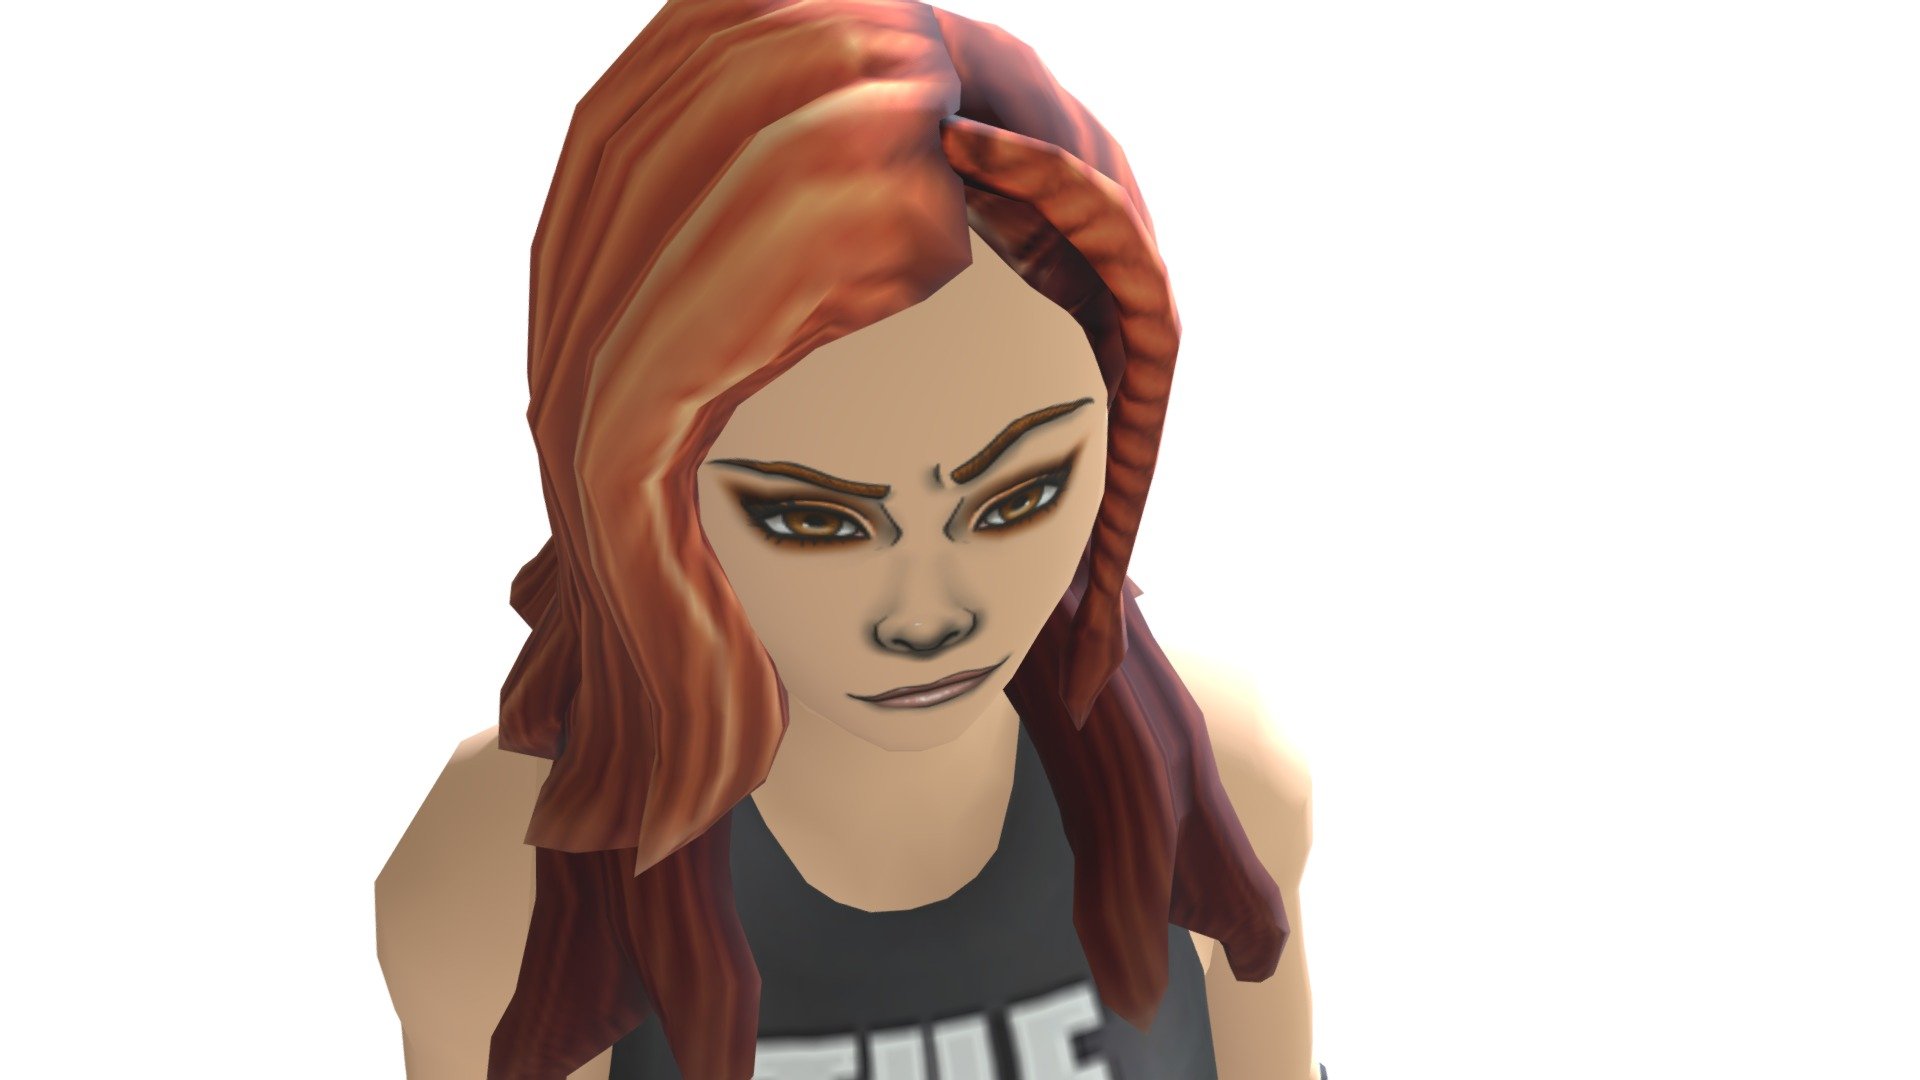 Wwe Becky Lynch Roblox 3d Model By Mrscottypieey Minecraftgamerpc64 9a82e8f Sketchfab - roblox wwe avatar